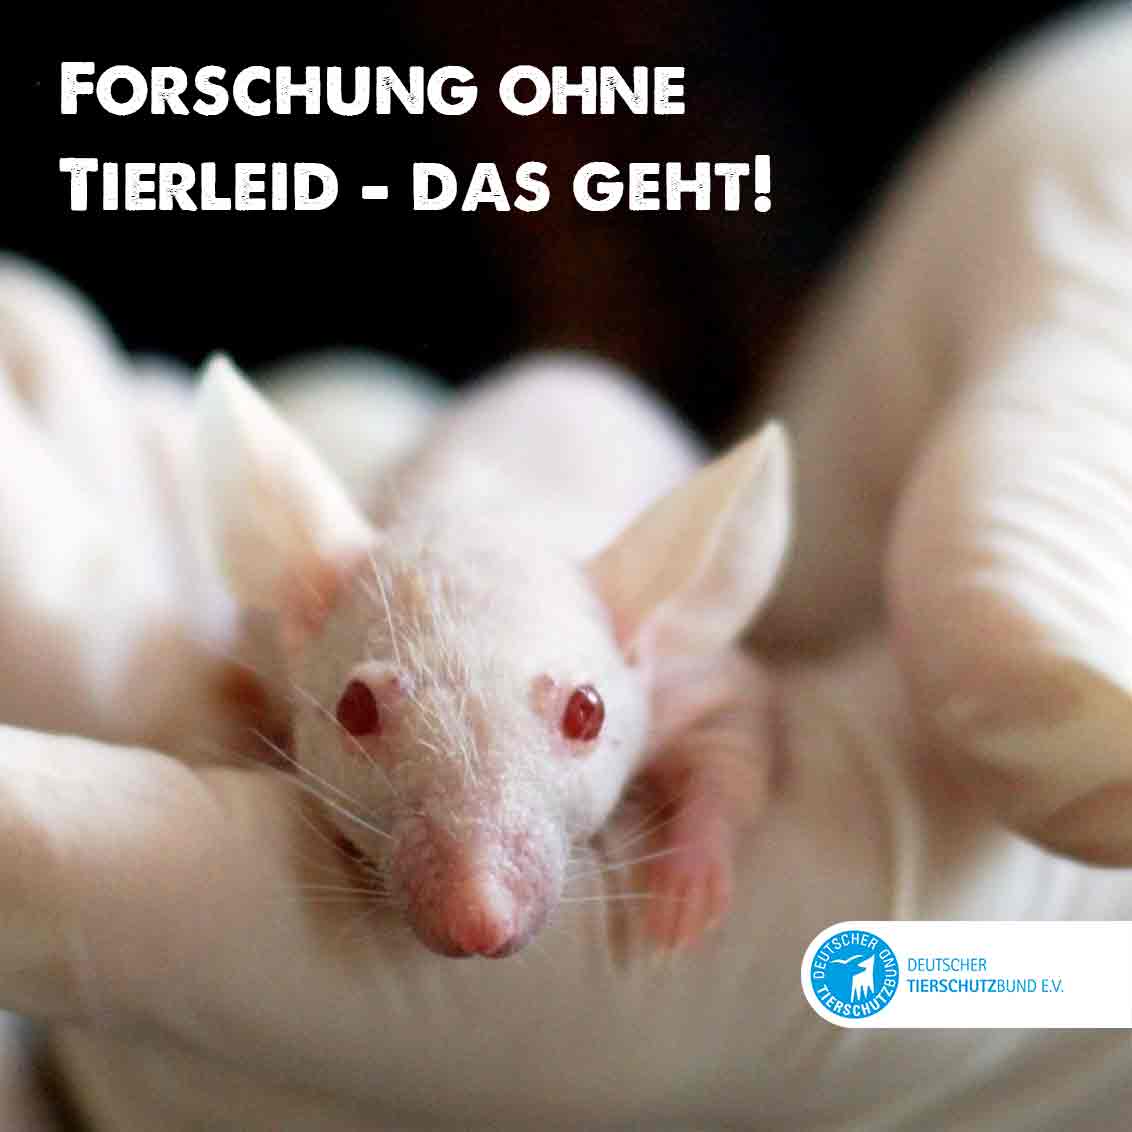 Zum #TagdesVersuchstiers fordern wir die Regierung auf, Tierversuche endlich gänzlich abzuschaffen. Noch immer lässt Deutschland Millionen Tiere in Laboren leiden, obwohl tierleidfreie Methoden in großer Zahl verfügbar sind.  duunddastier.de/forschung-ohne… #Tierversuche